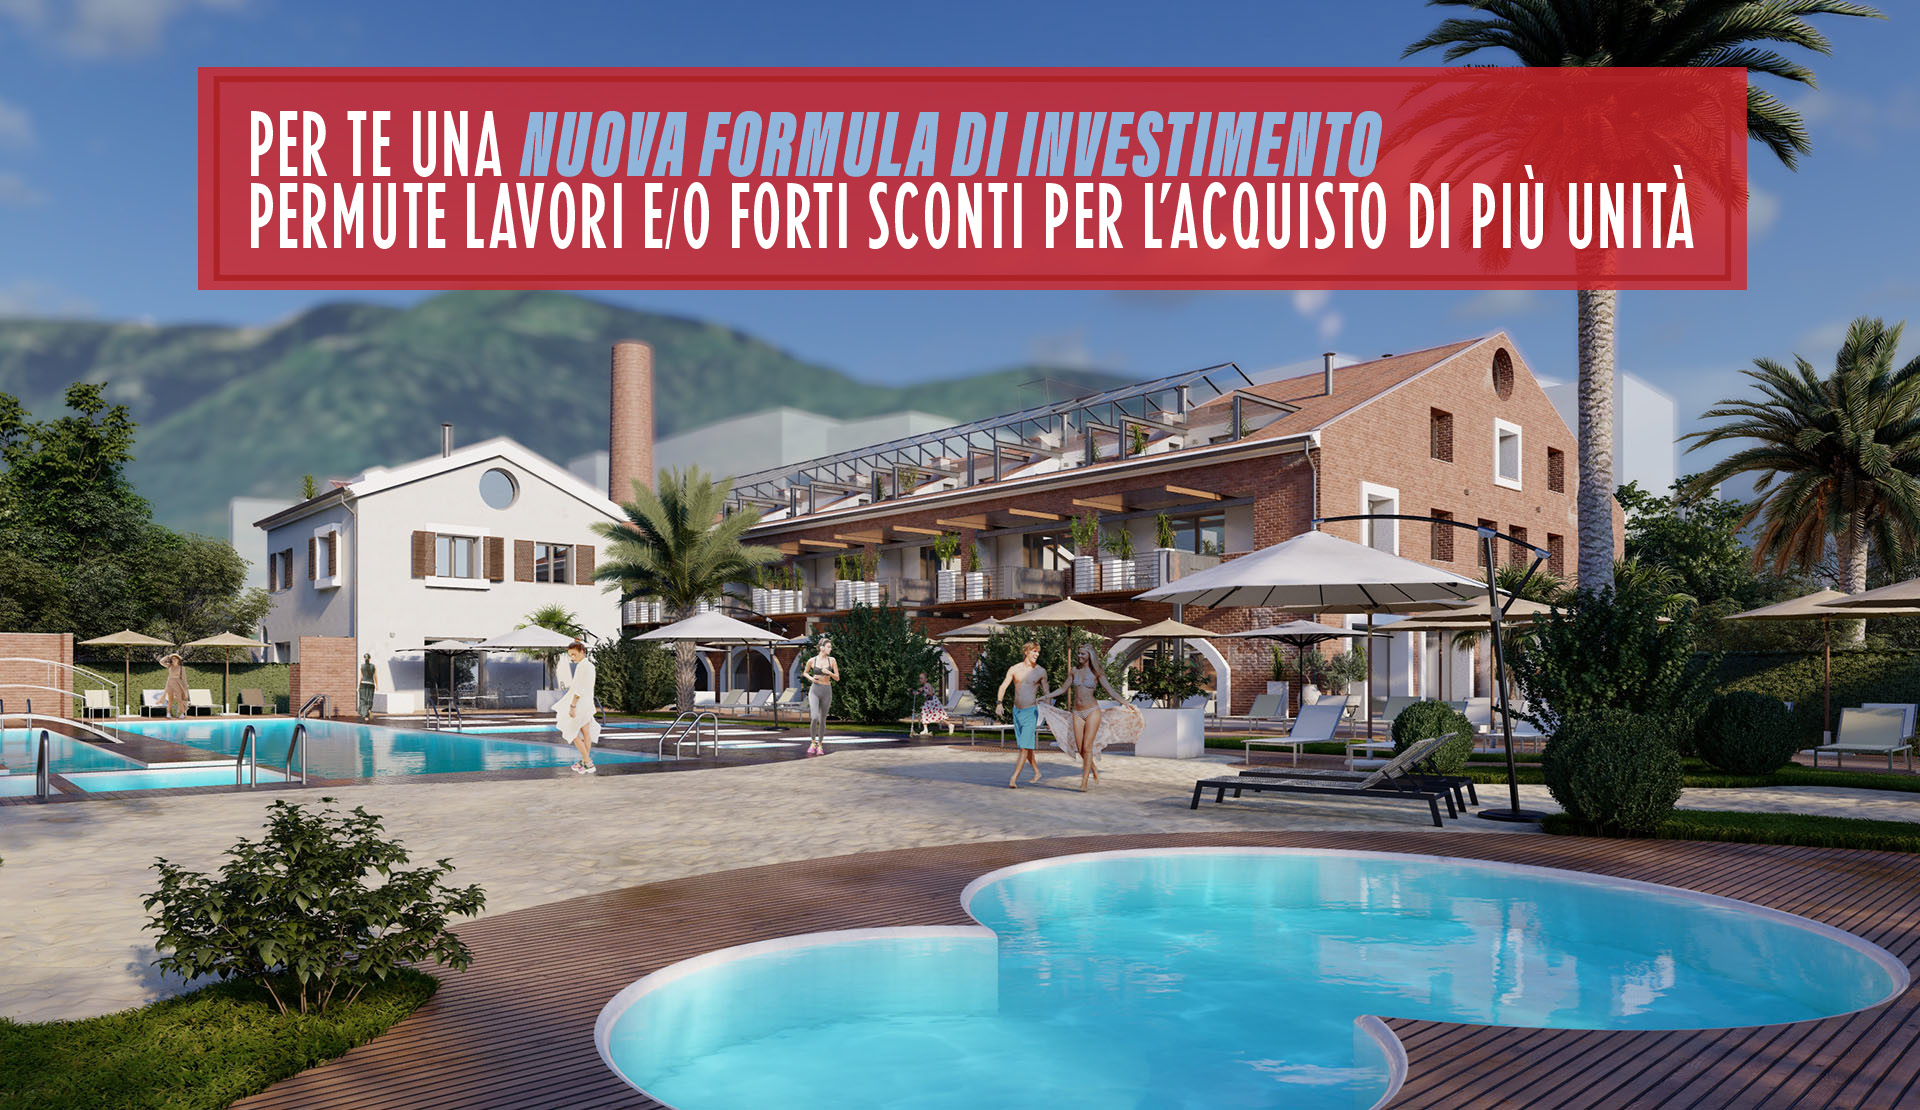 Investimento immobiliare Liguria